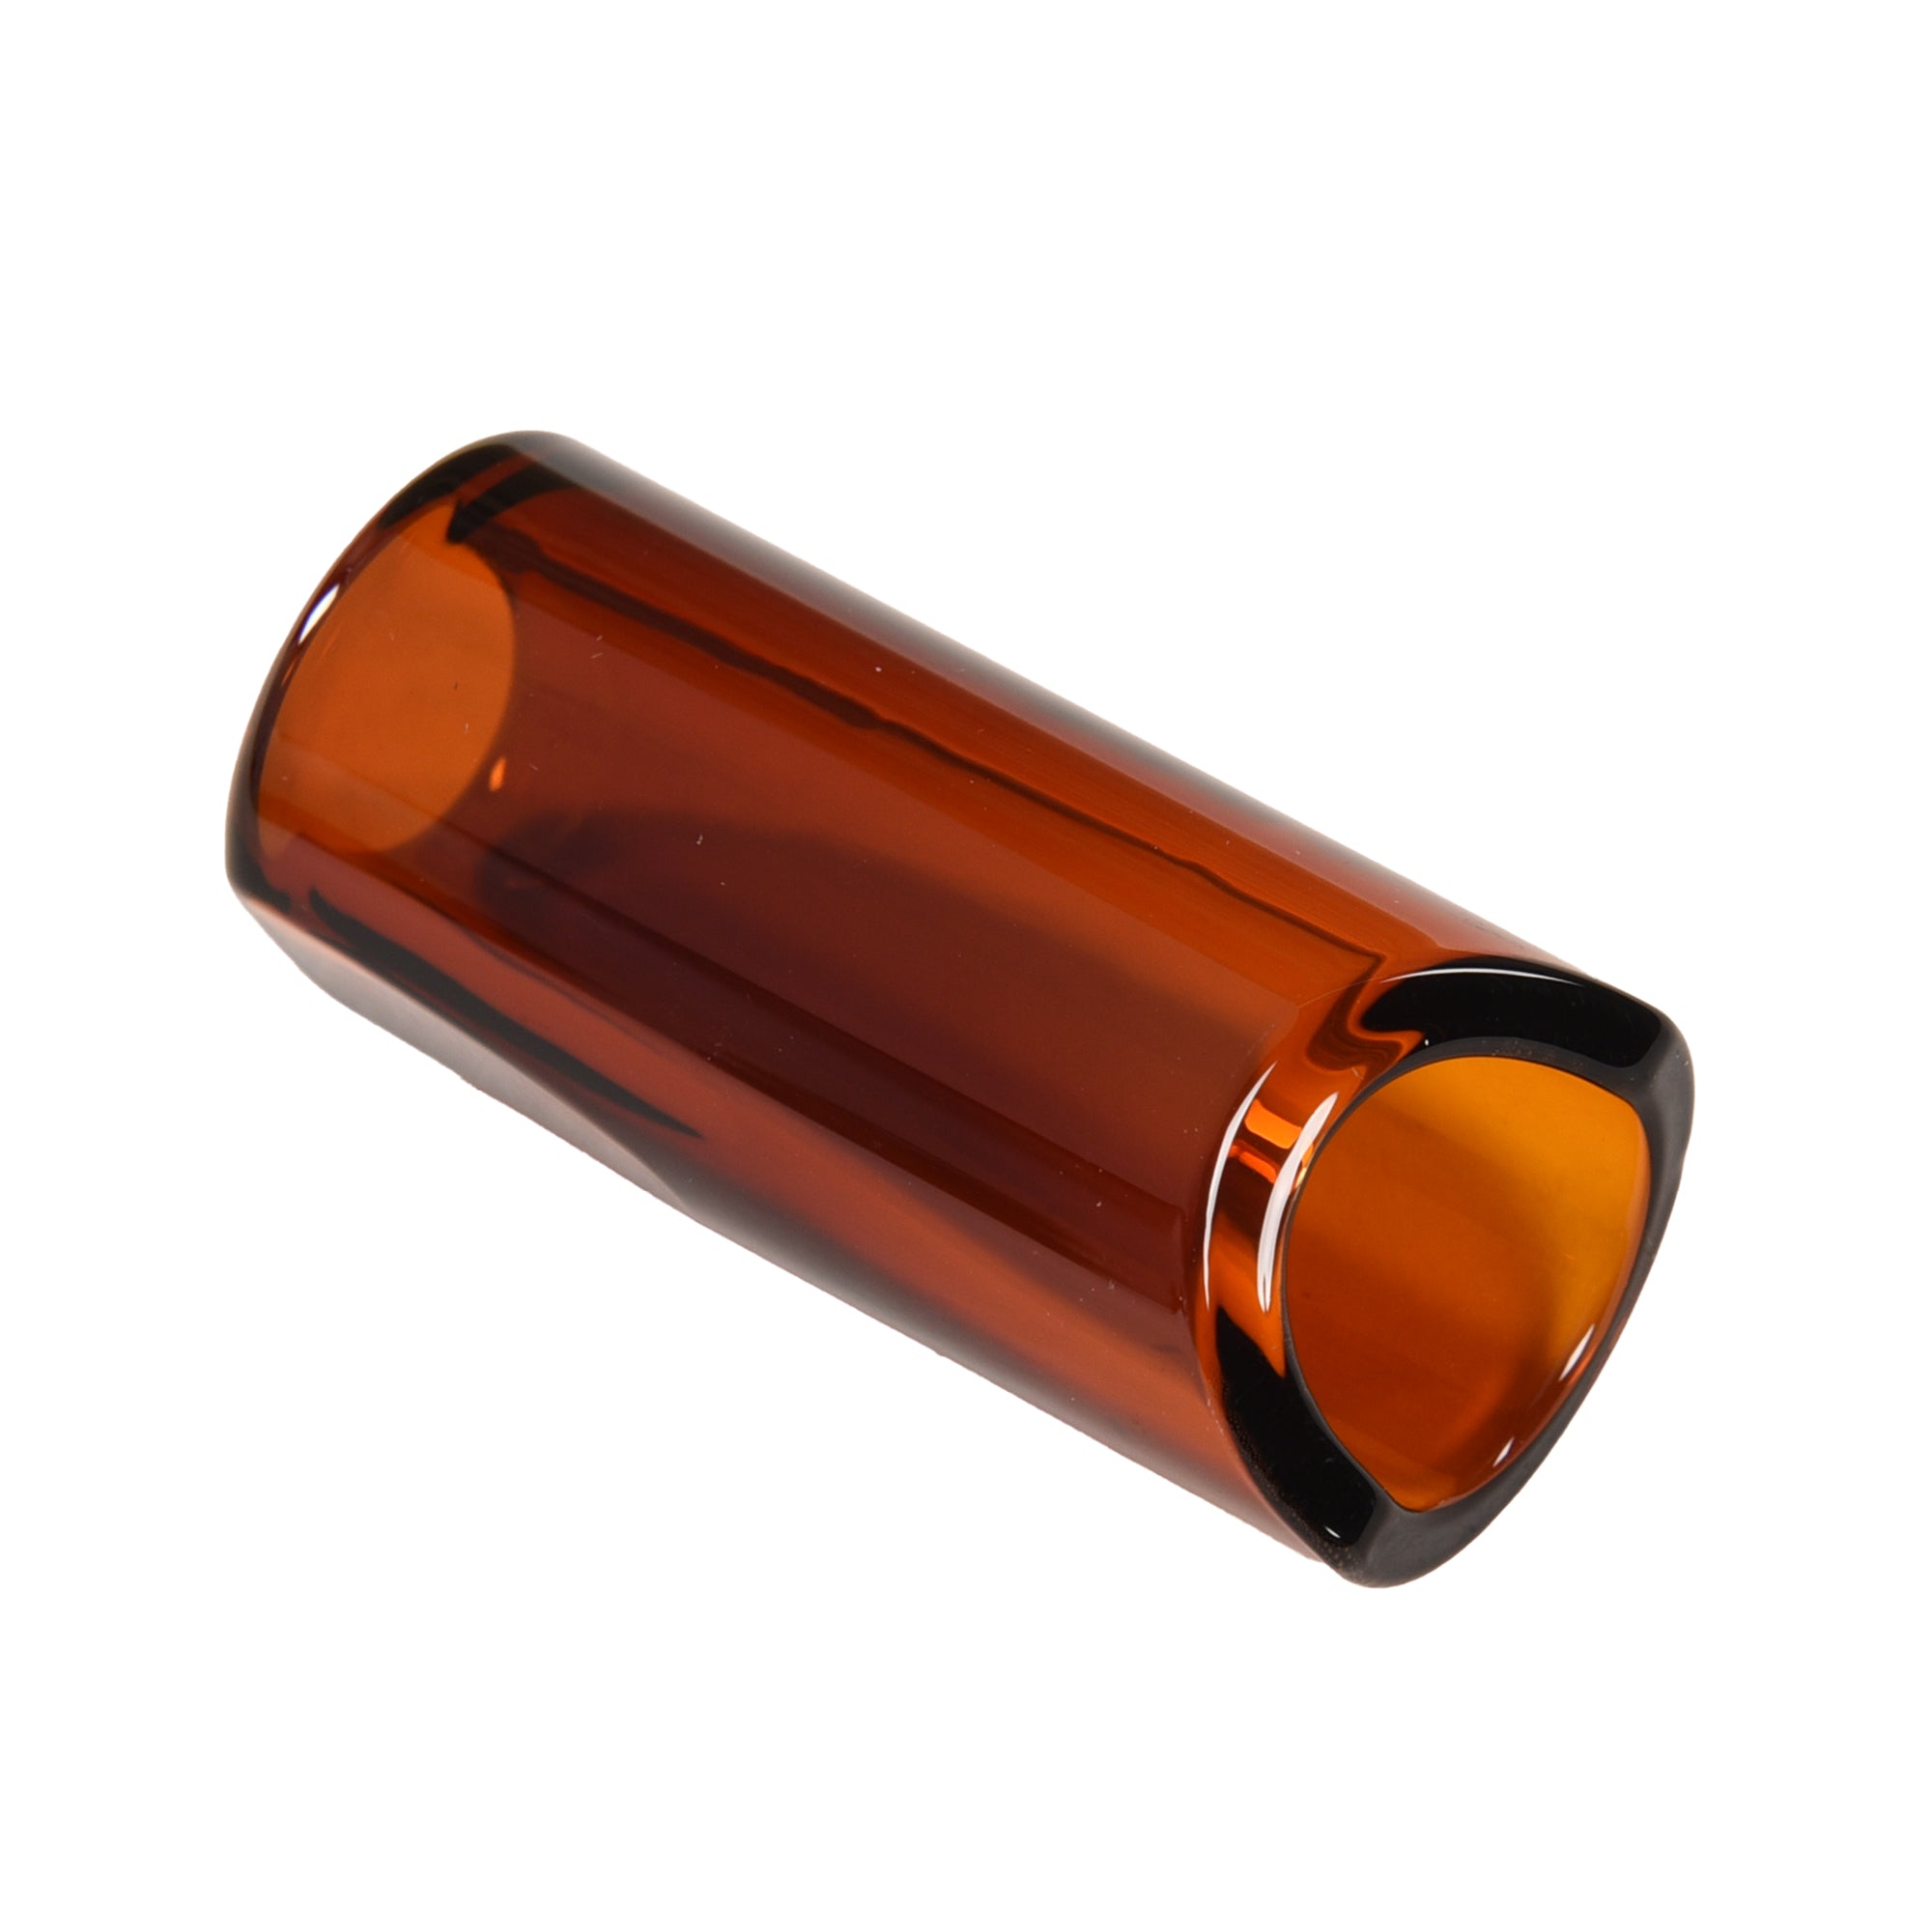 The Rock Slide Medium 19.5mm Internal Diameter x 60mm Length Amber Glass